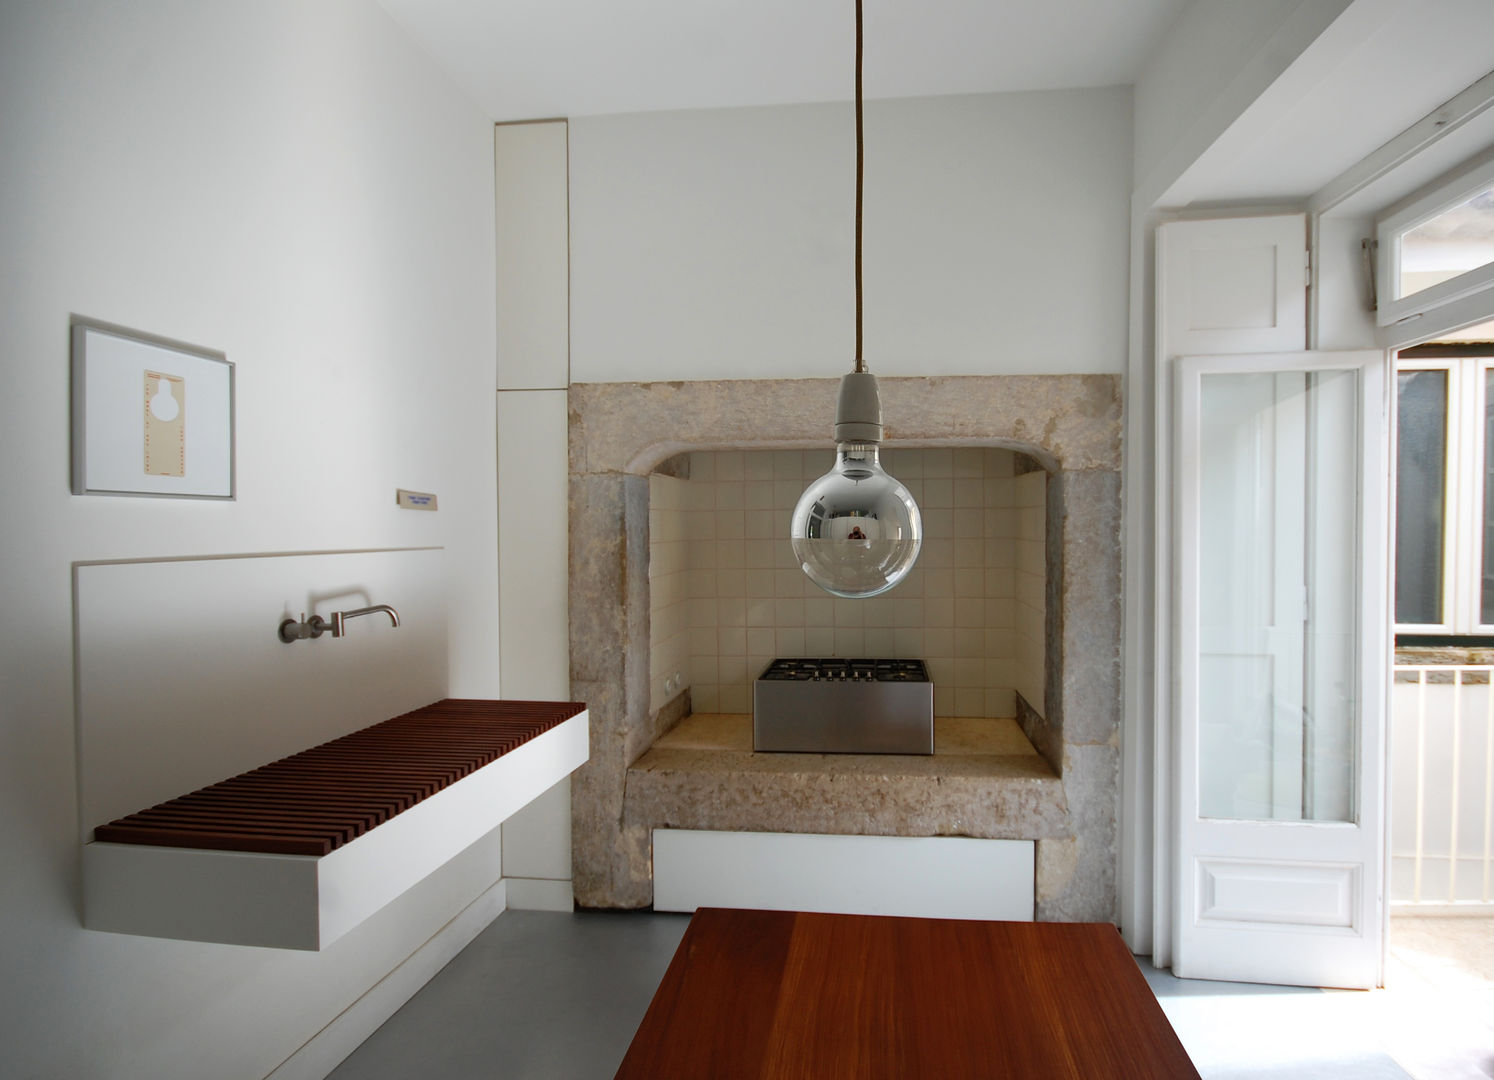 Apartamento Pedras Negras (2012), pedro pacheco arquitectos pedro pacheco arquitectos Kitchen